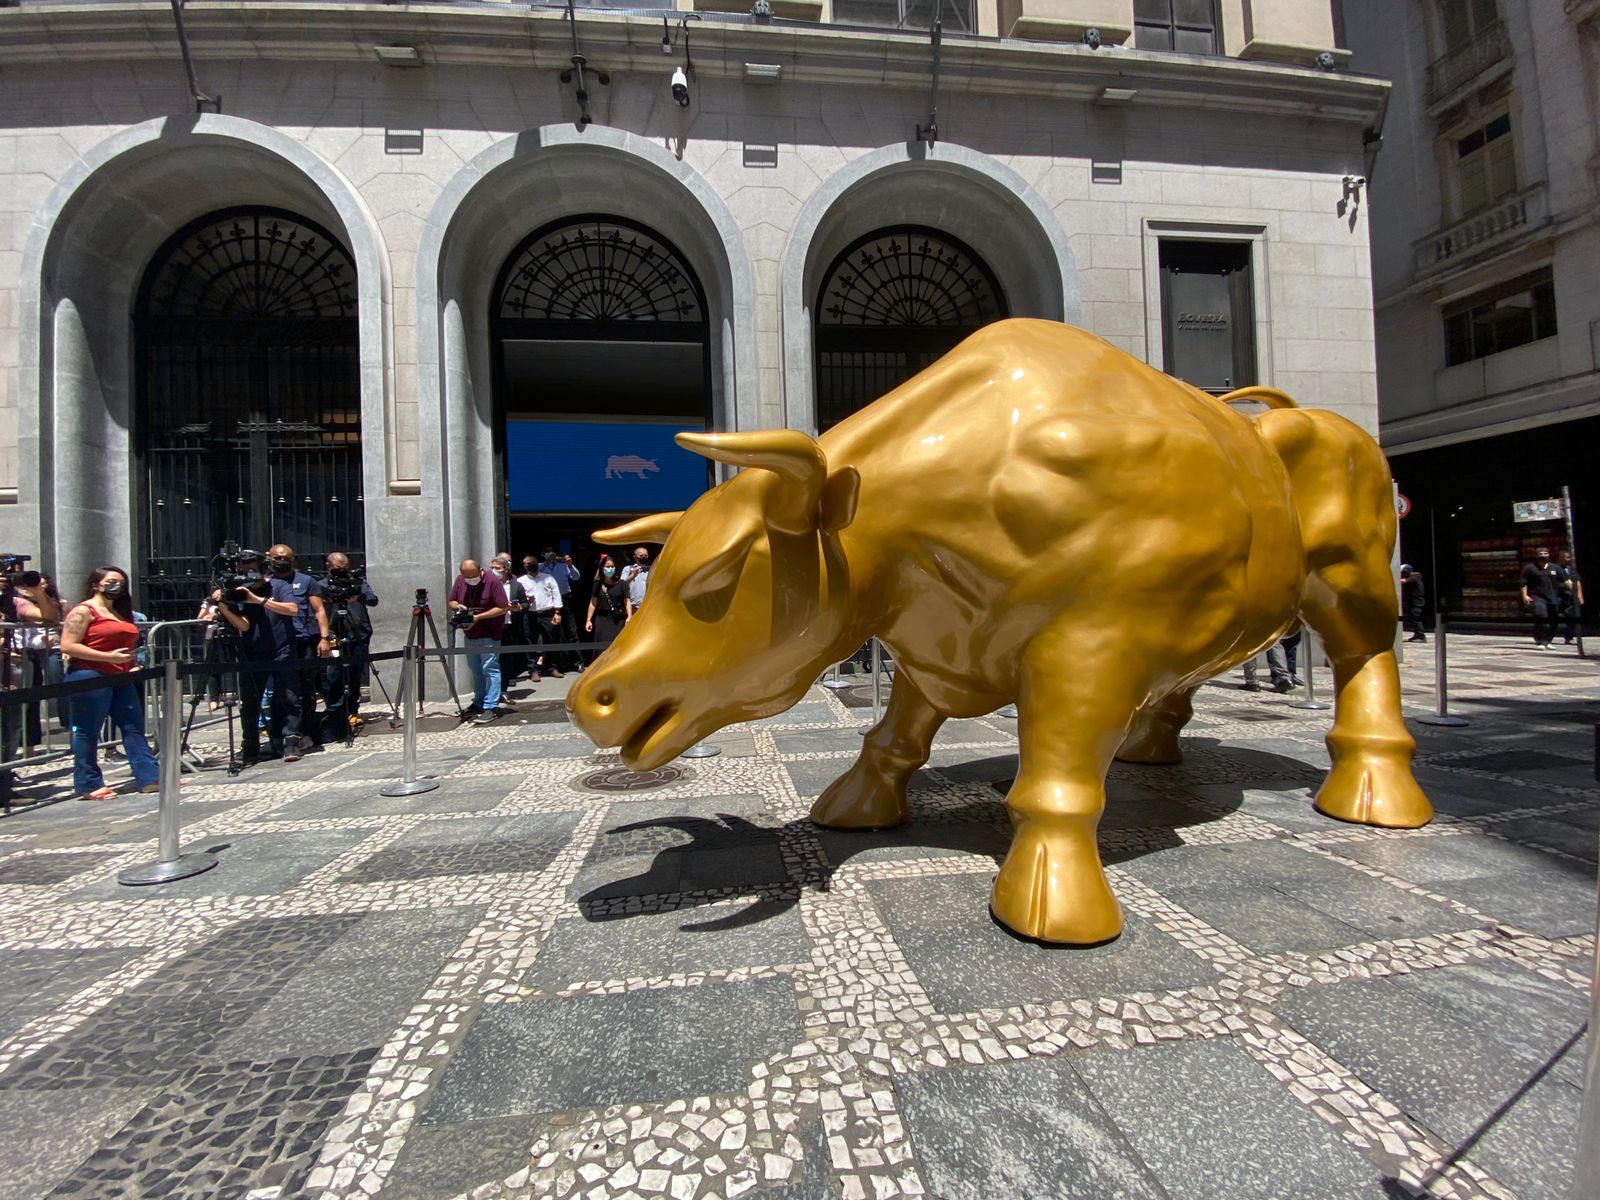 Foto do touro dourado instalado em frente à B3, a Bolsa Brasileira, em São Paulo.